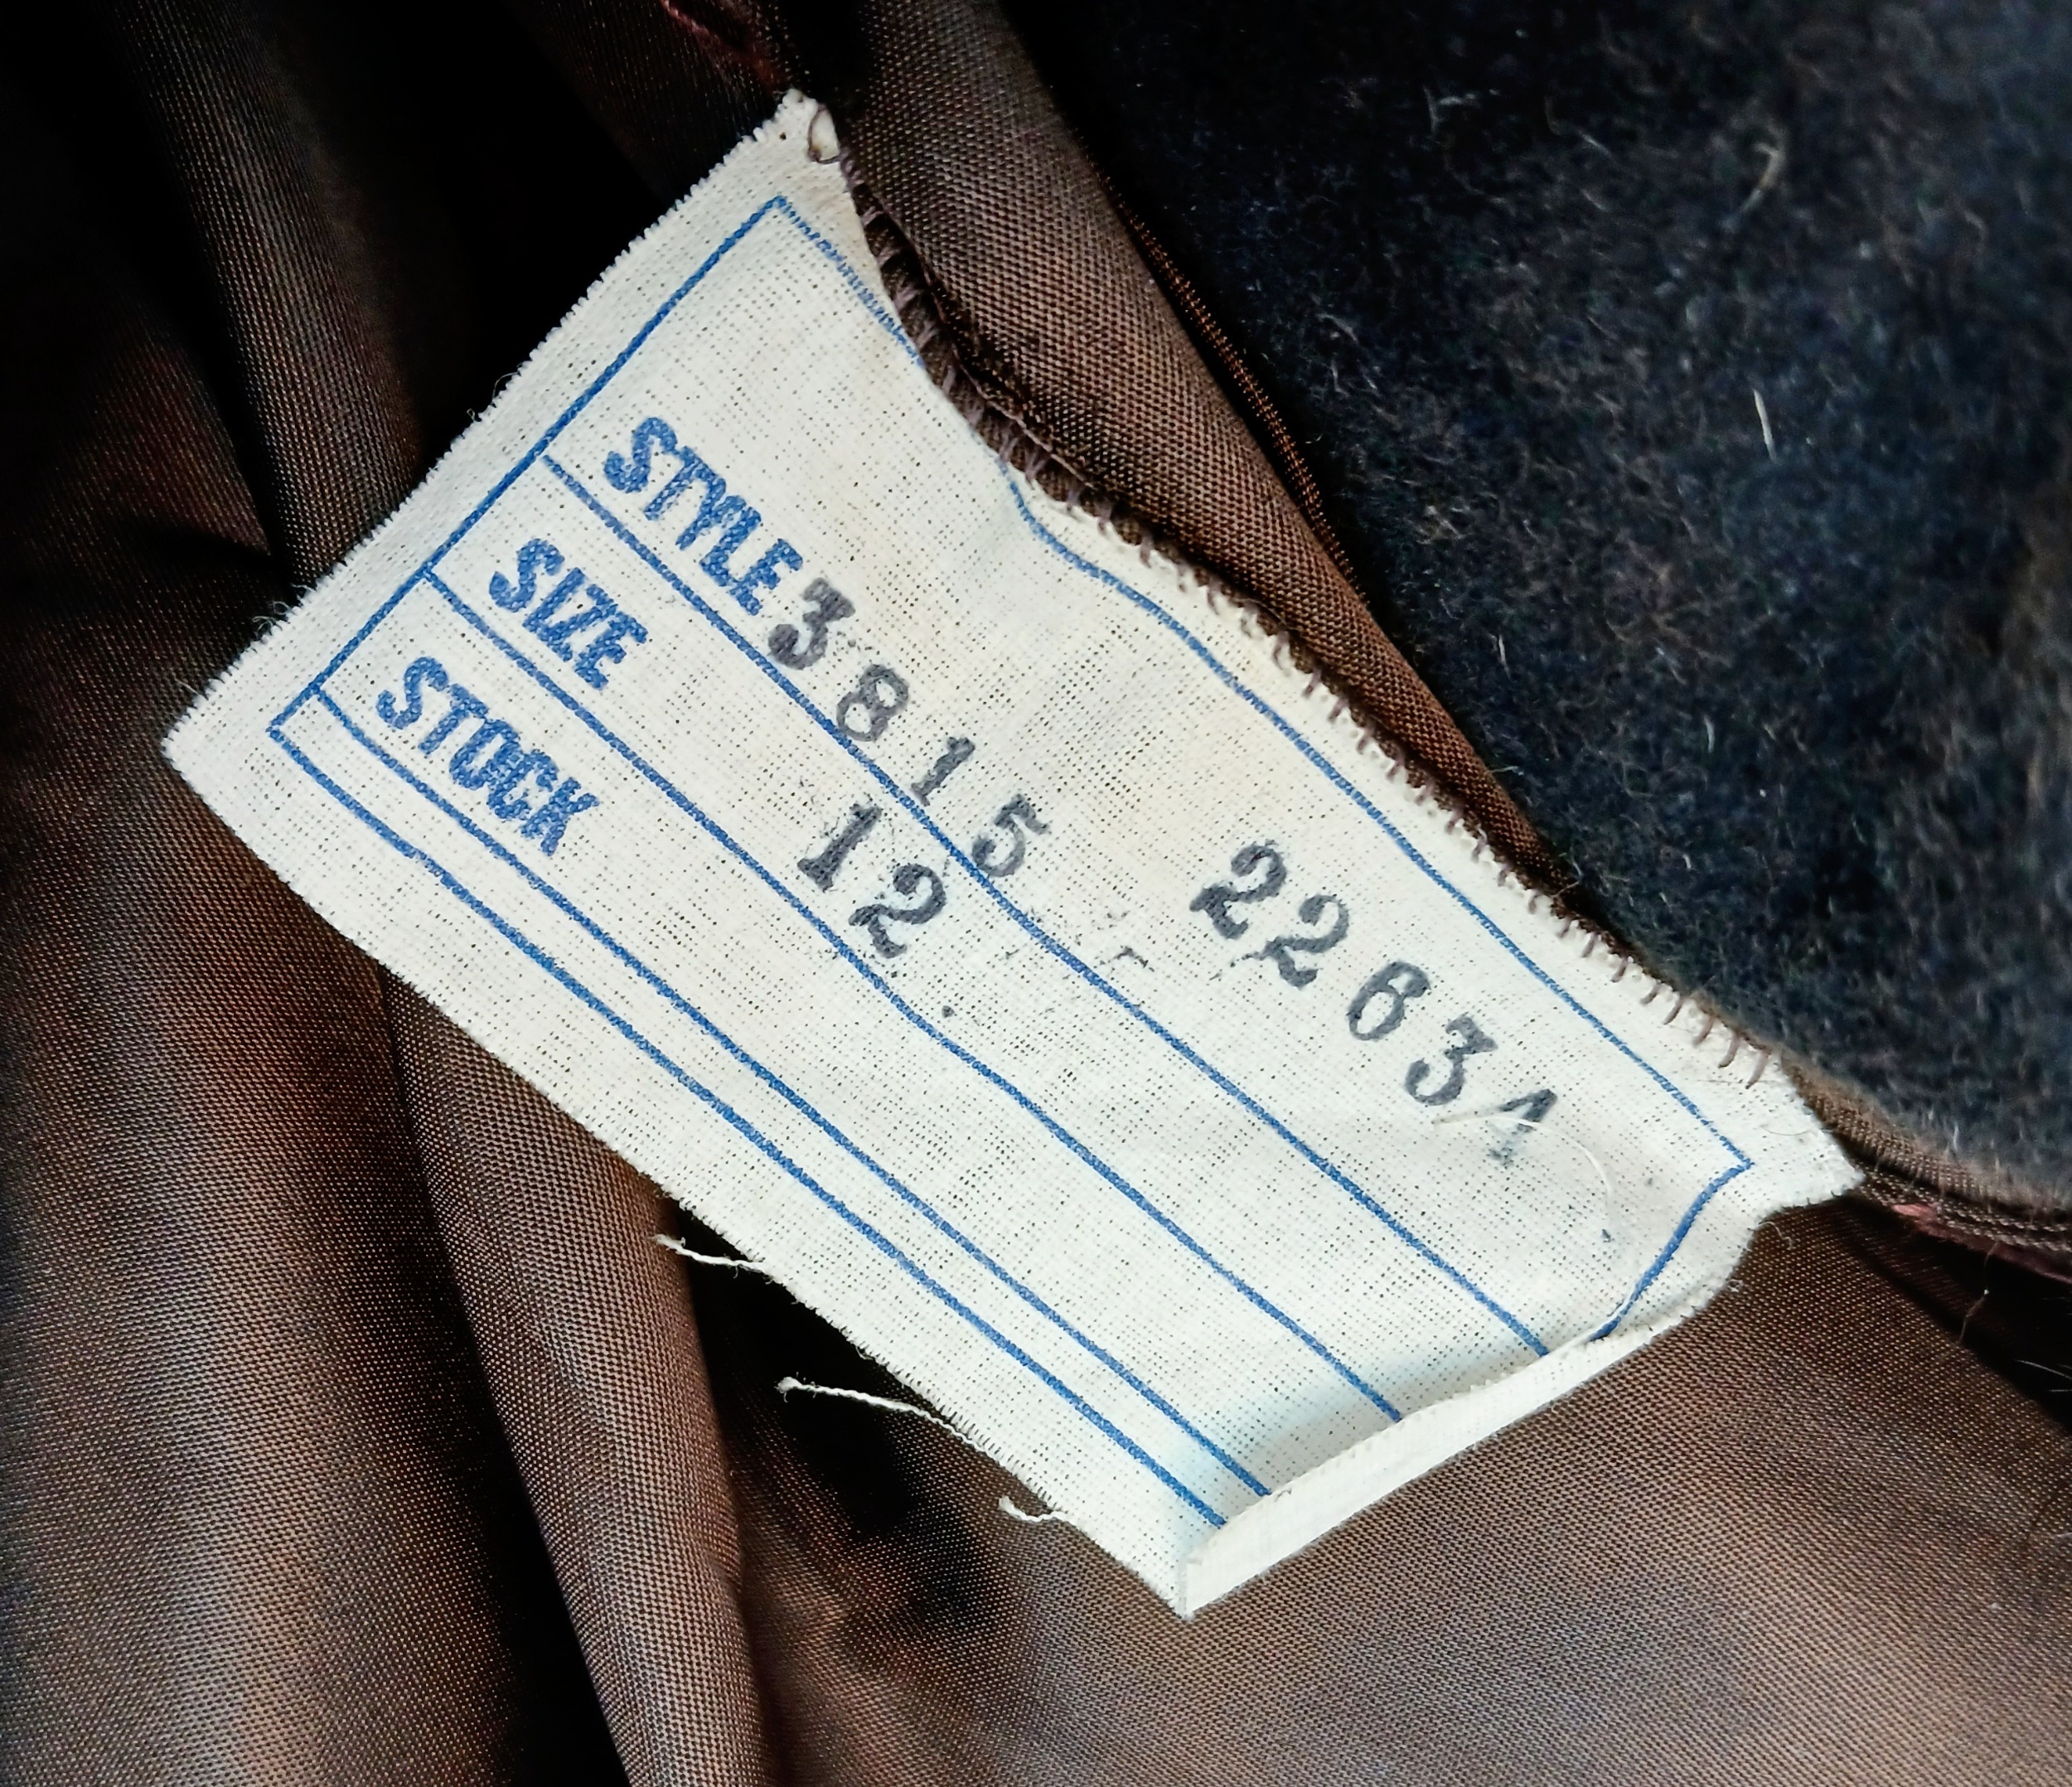 A Vintage Full Length Fur Coat - Possibly Mink/Sable. - Image 6 of 7